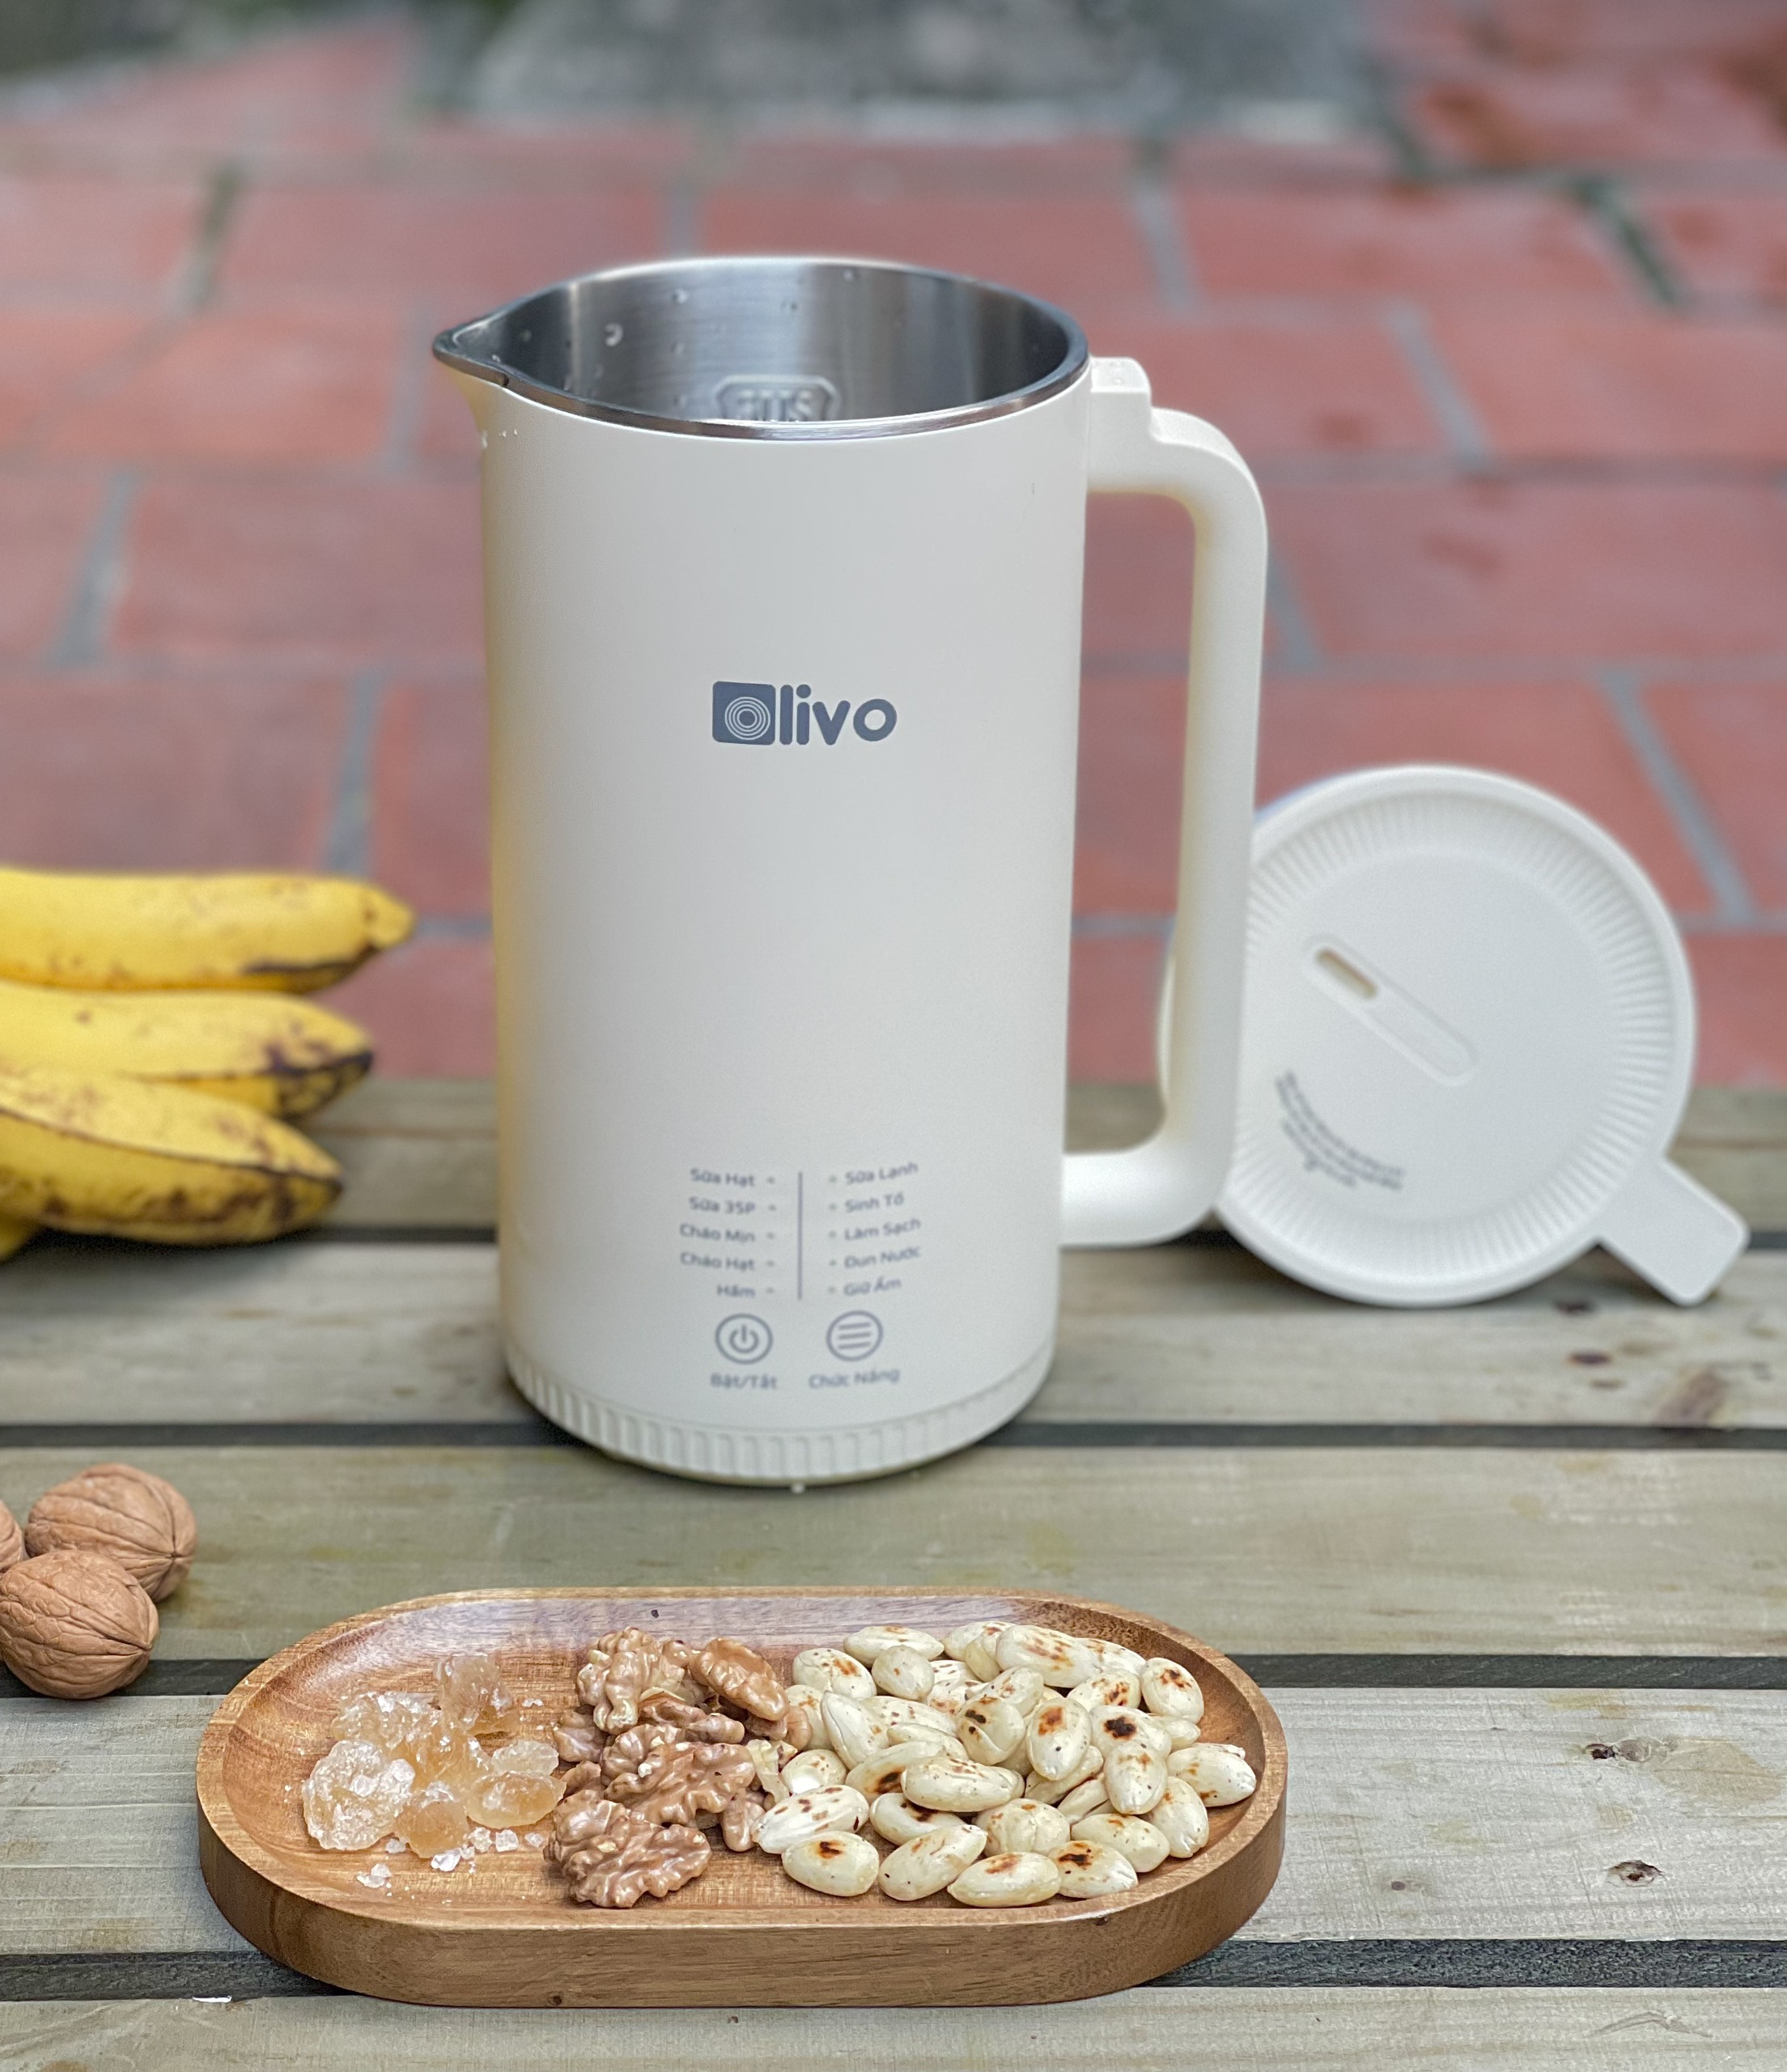 Máy làm sữa hạt OLIVO CB2000 nấu sữa hạt, nấu cháo, xay sinh tố siêu đơn giản ngay tại nhà